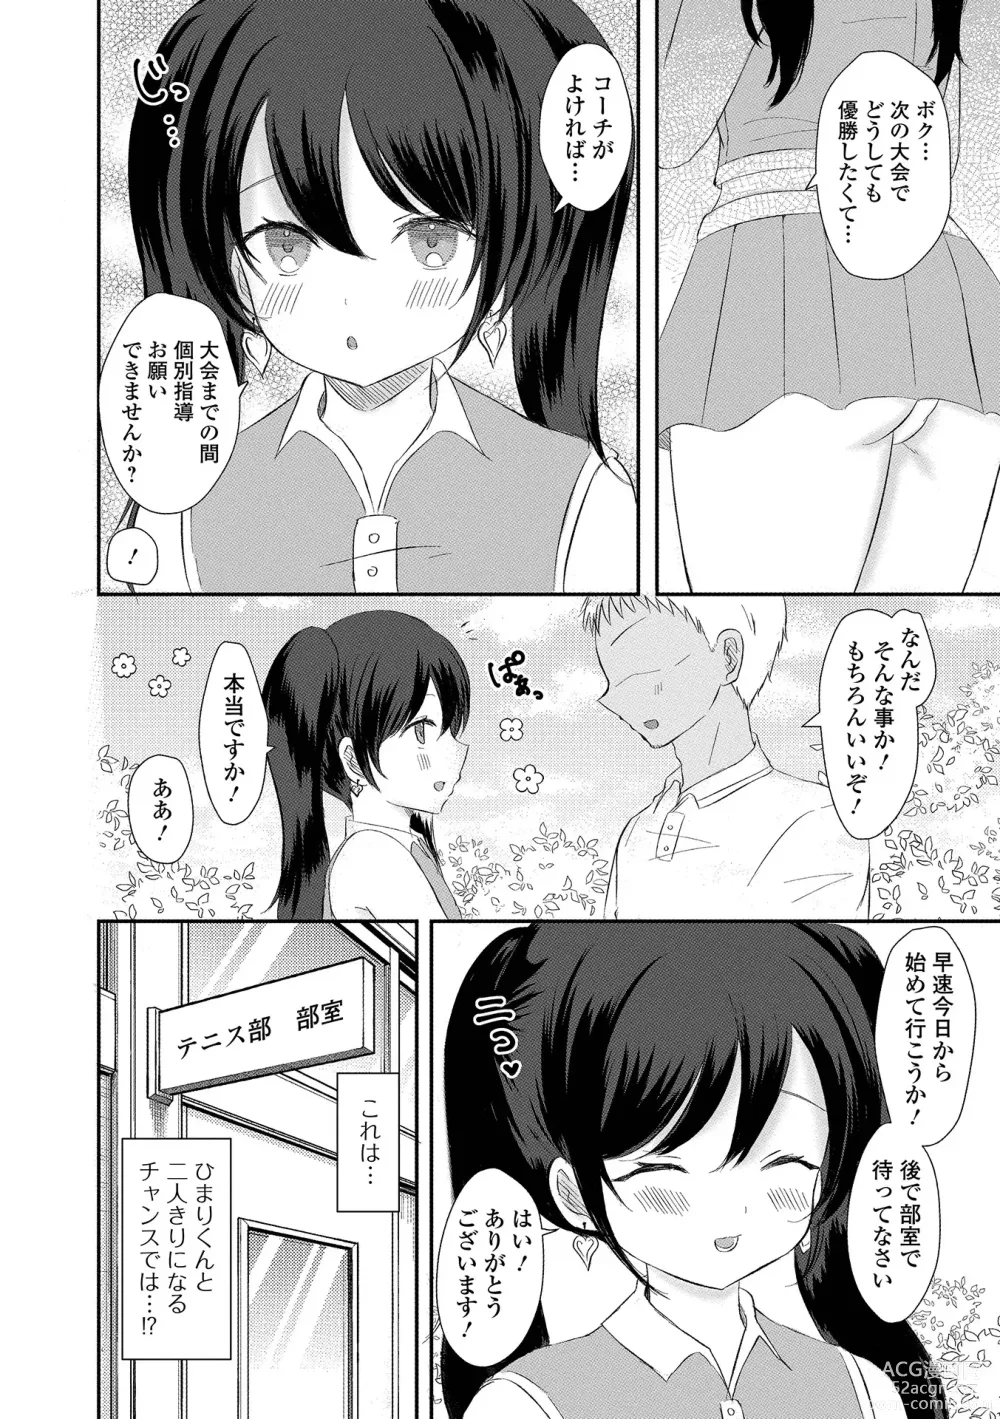 Page 86 of manga Gekkan Web Otoko no Ko-llection! S Vol. 92